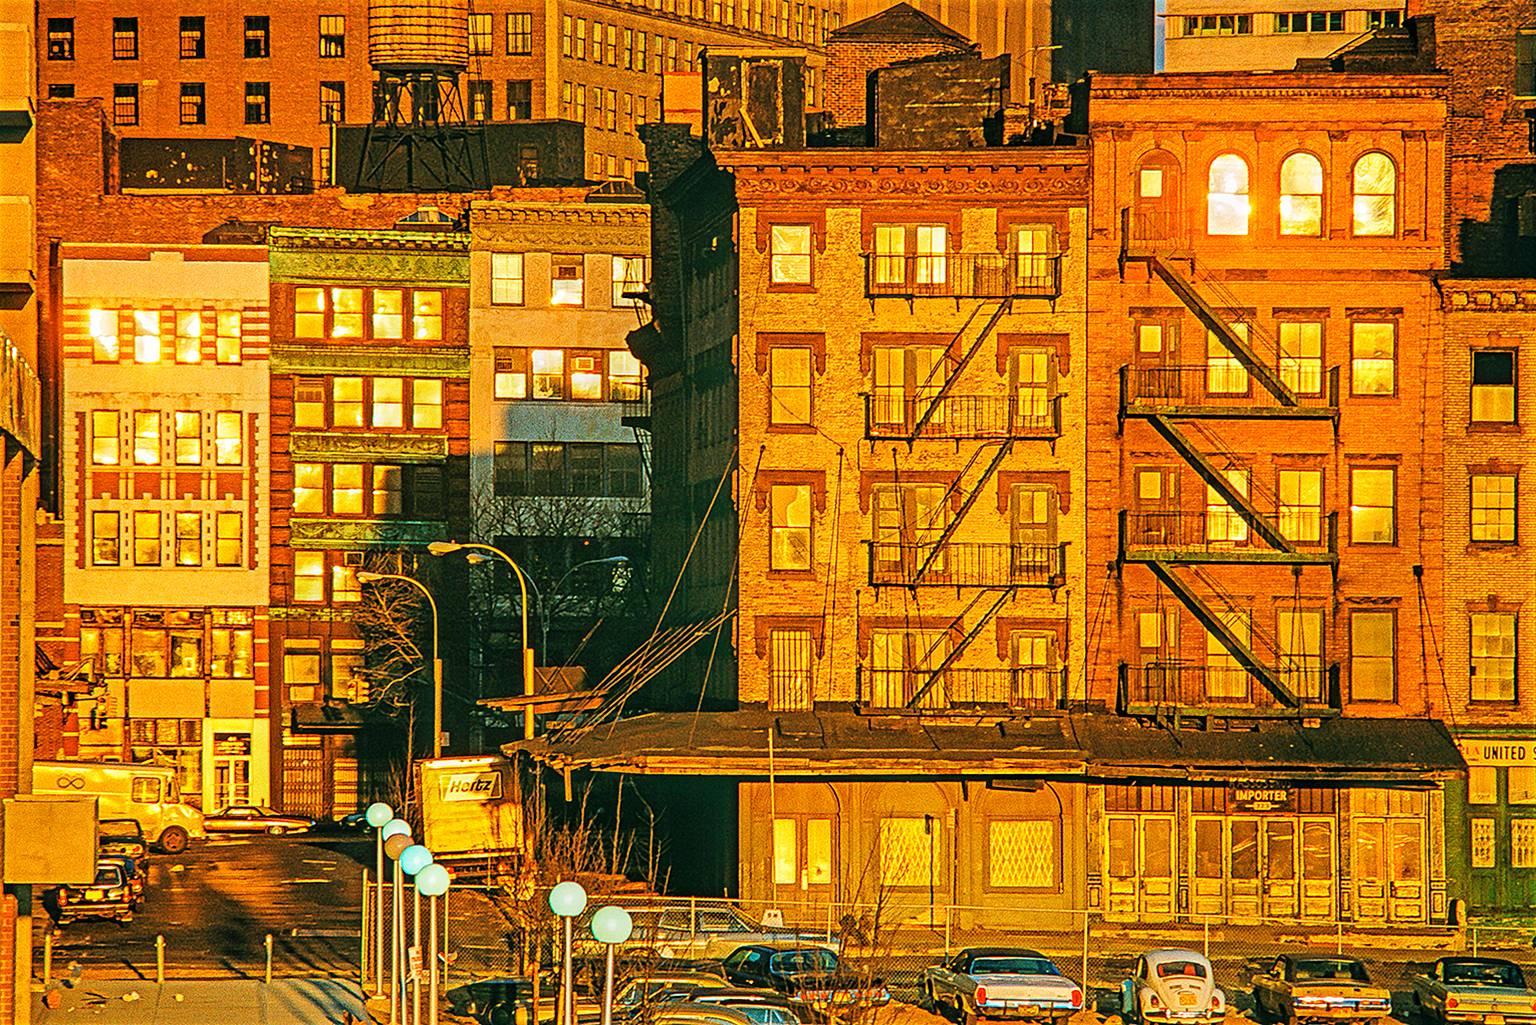 Le sens de la lumière tardive d'Edward Hopper, combiné à l'isolement et à la désolation de New York, est décrit dans les photographies en couleur de Mitchell Funk. La lumière dorée donne au New York des années 70 une lueur magique et fait briller